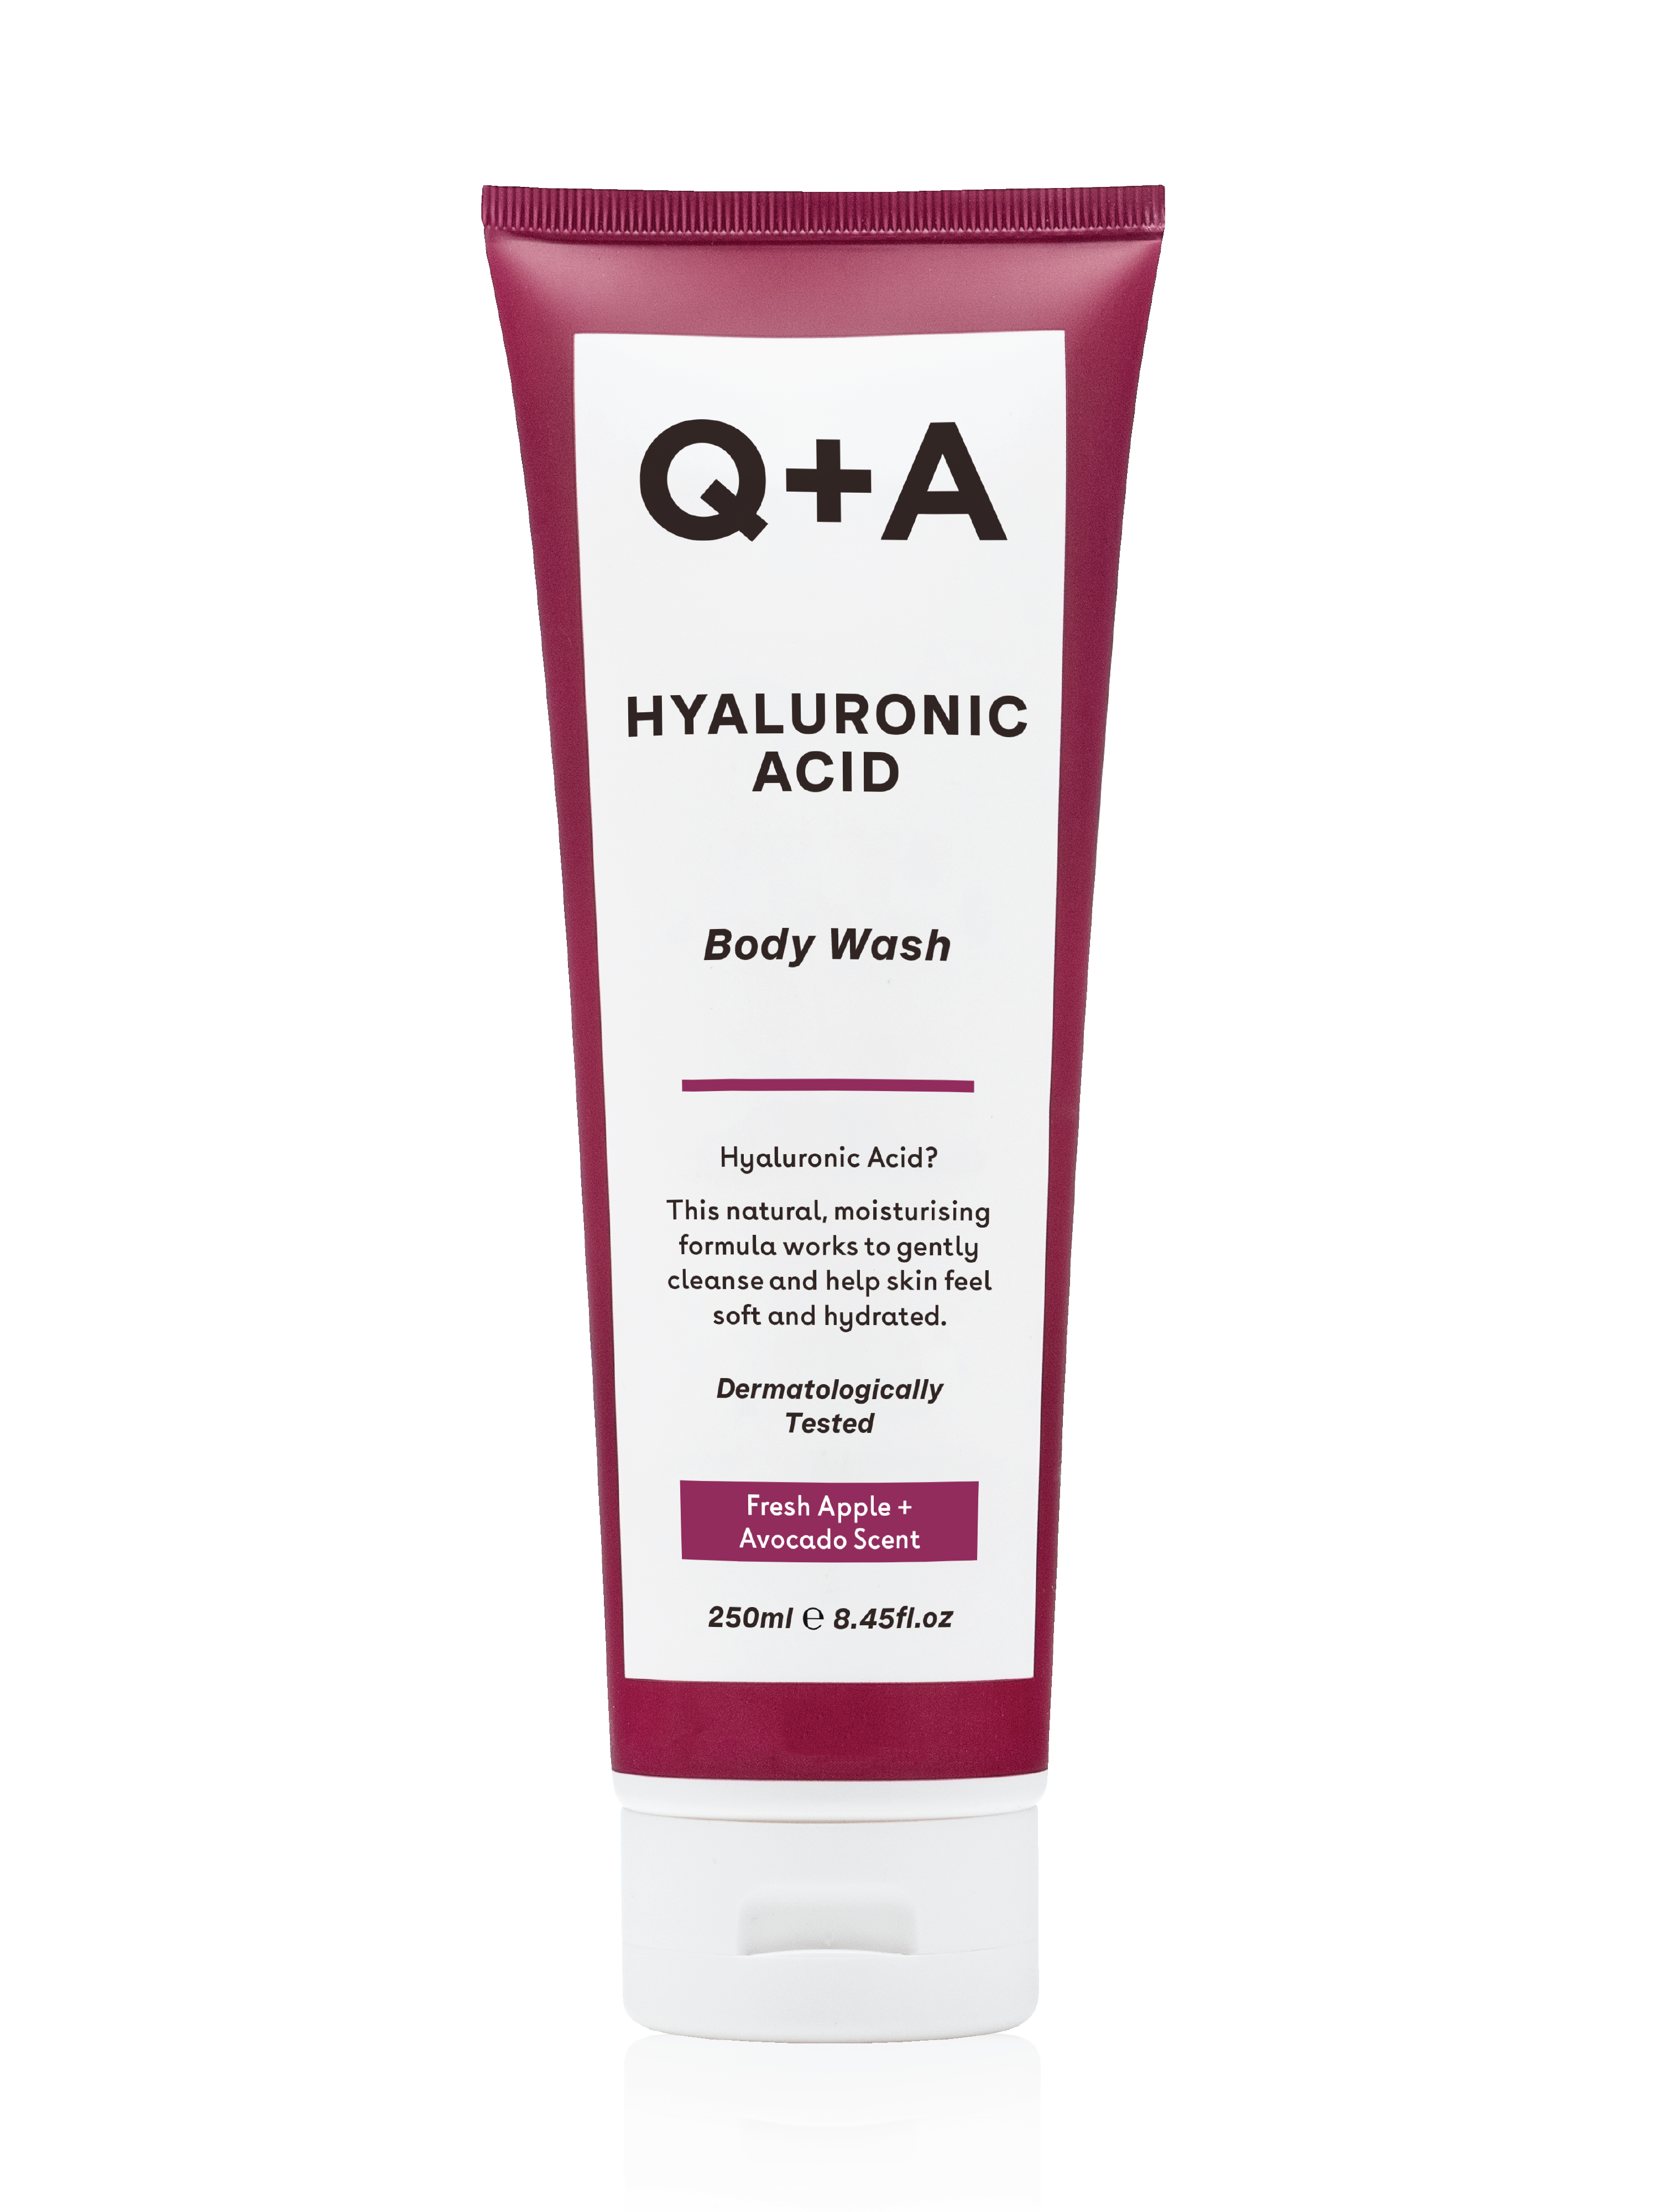 Q+A Hyaluronic Acid Body Wash, 250 ml